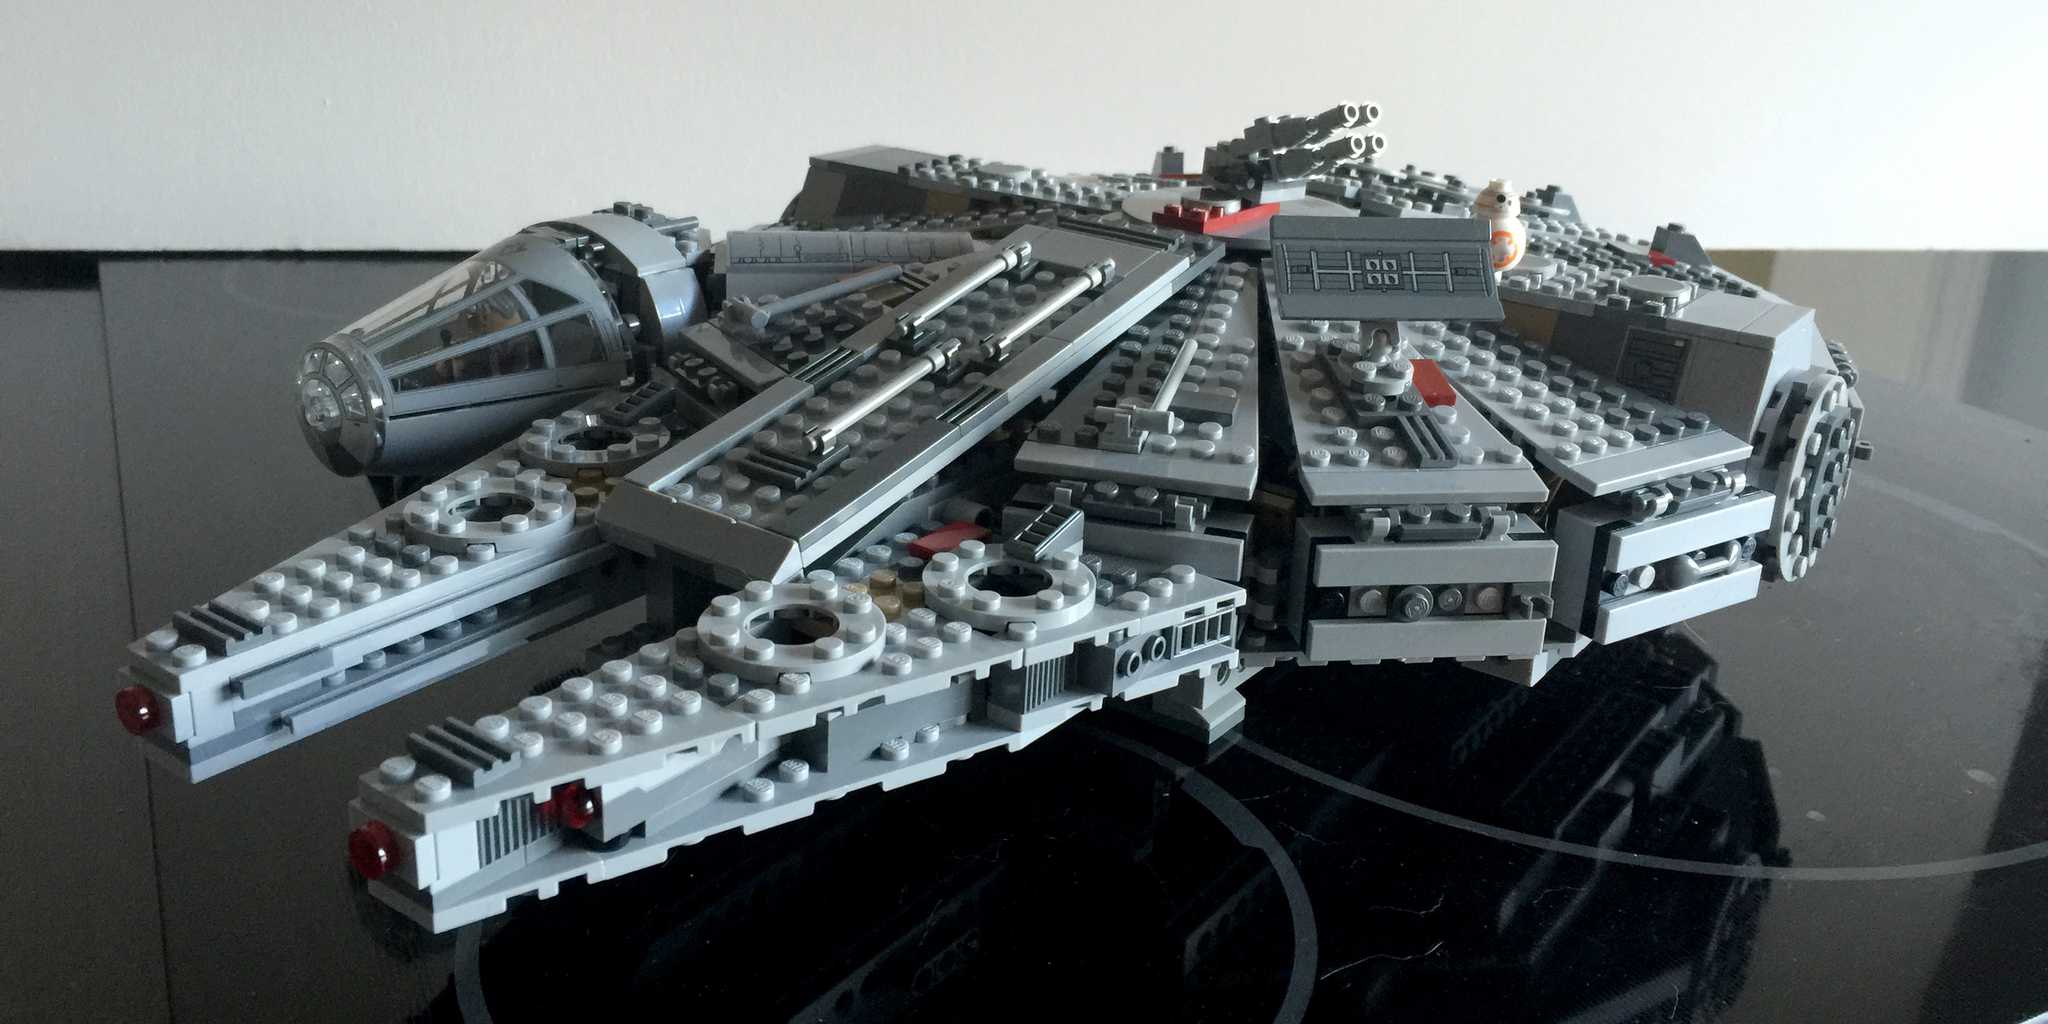 millennium falcon lego set 1351 pieces